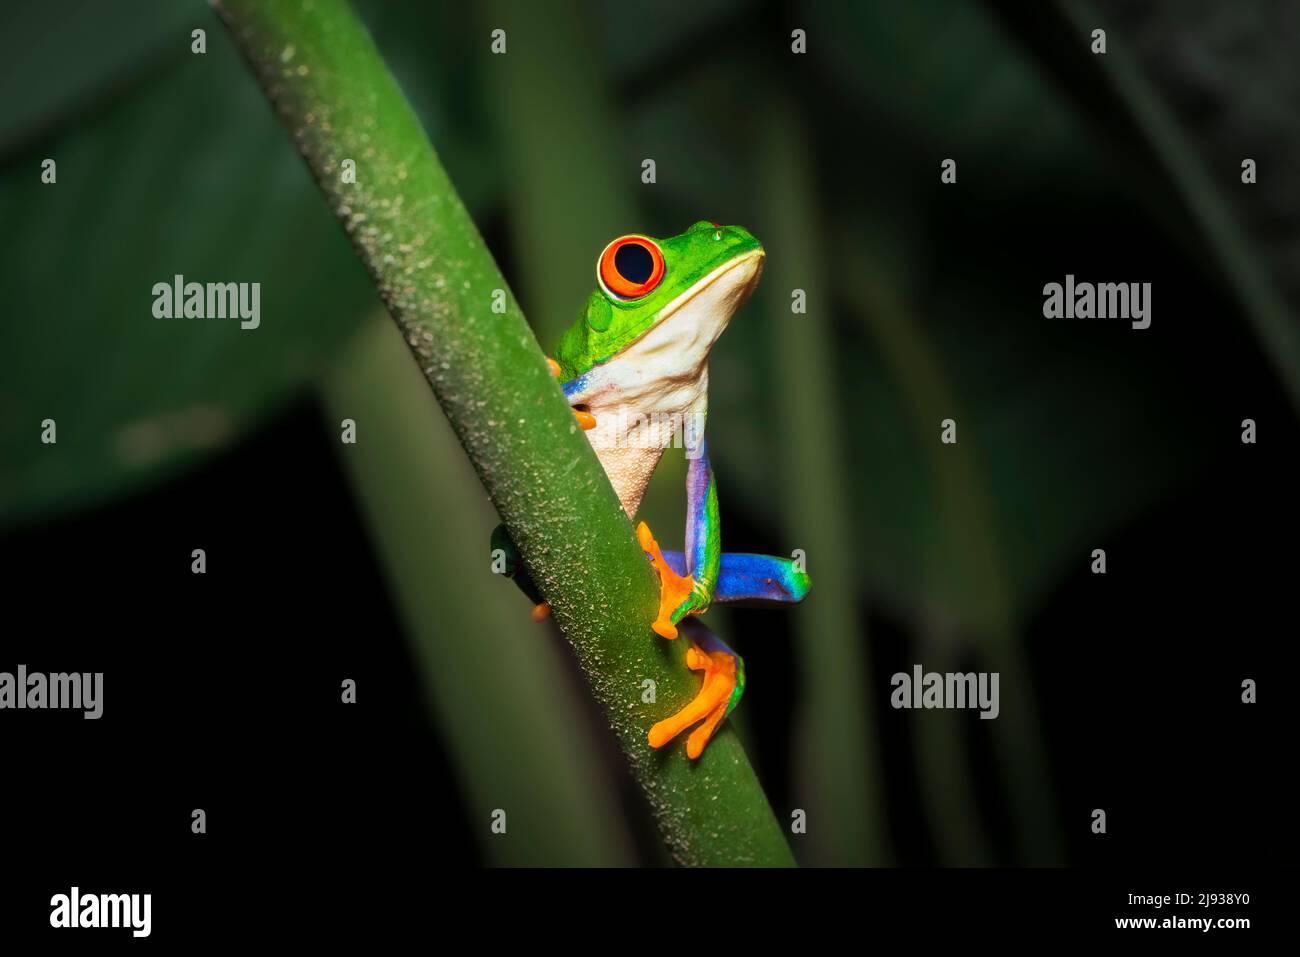 Porträt eines rotäugigen Baumfrosches oder Laubfrosches oder Gaudy-Blattfrosches (Agalychnis callidyas) auf einem tropischen Pflanzenstamm. Frösche von Costa Rica. Stockfoto